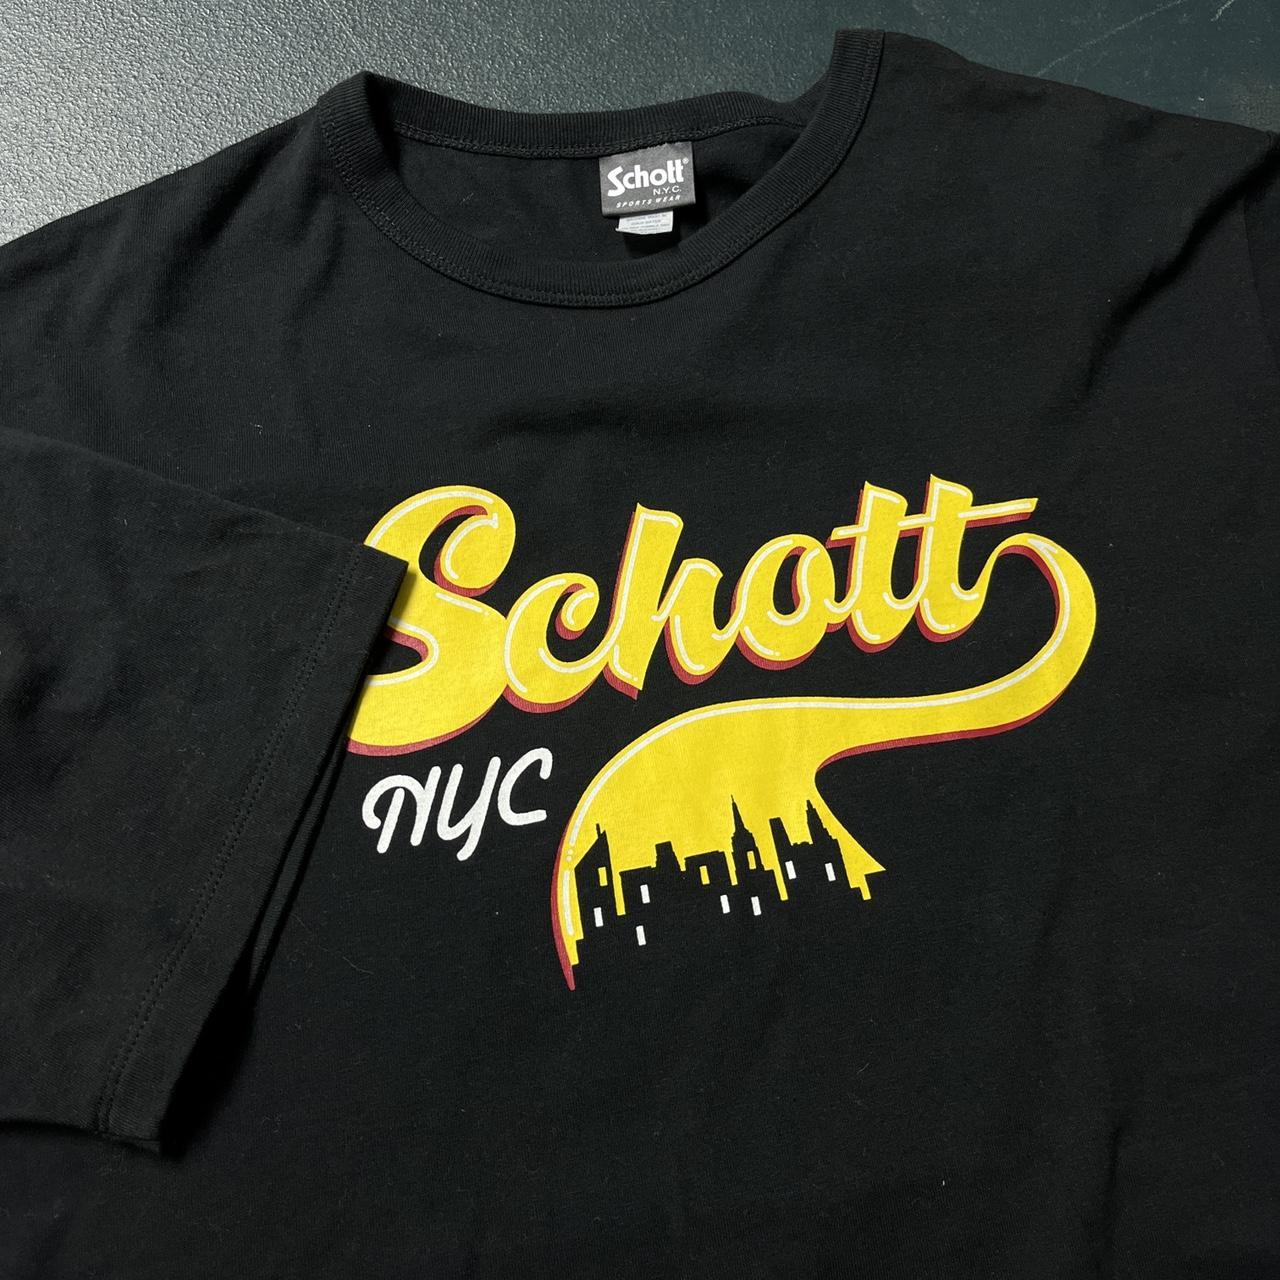 Schott Men's Black T-shirt